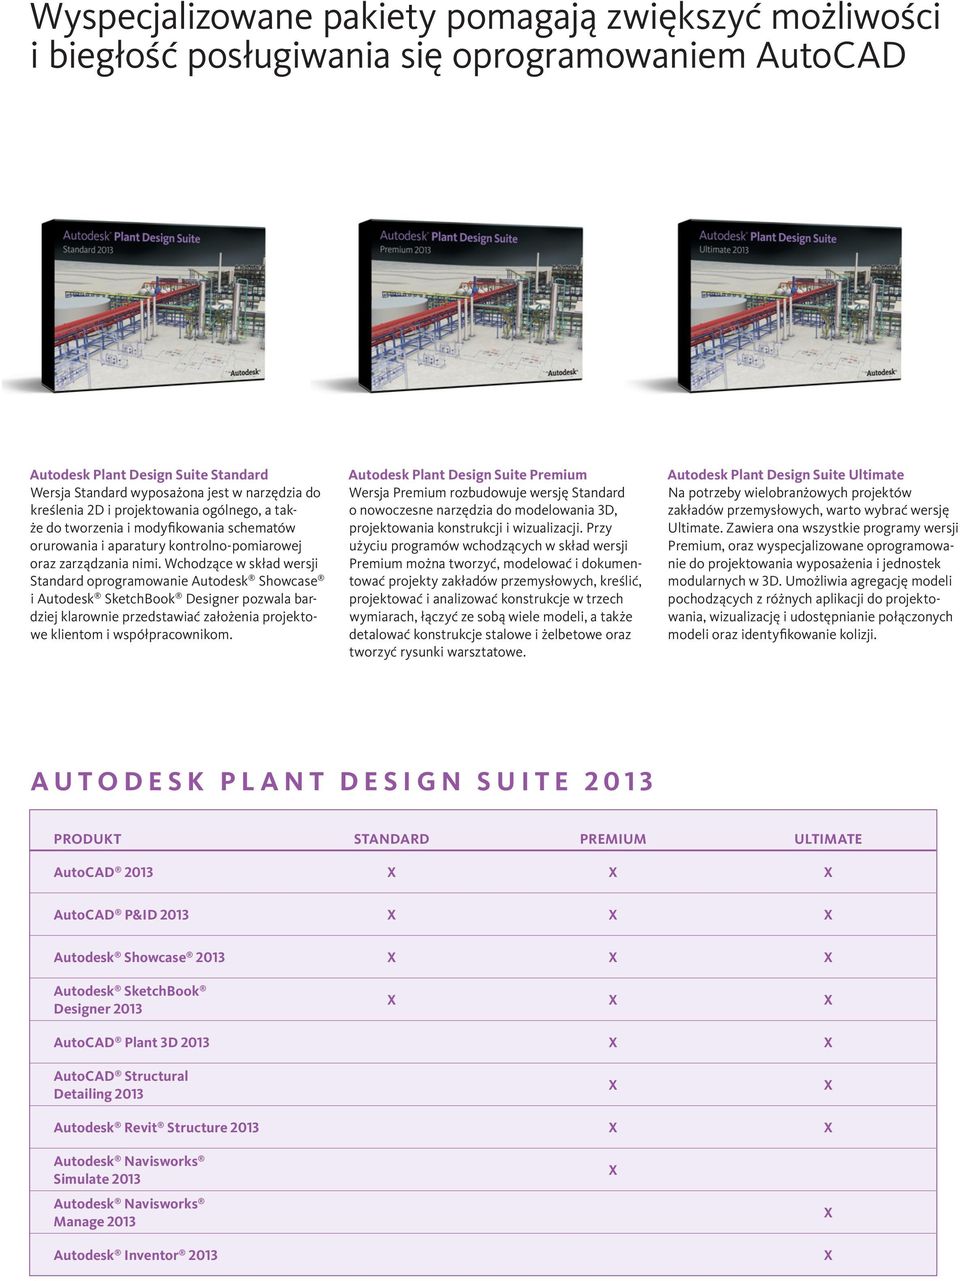 Wchodzące w skład wersji Standard oprogramowanie Autodesk Showcase i Autodesk SketchBook Designer pozwala bardziej klarownie przedstawiać założenia projektowe klientom i współpracownikom.